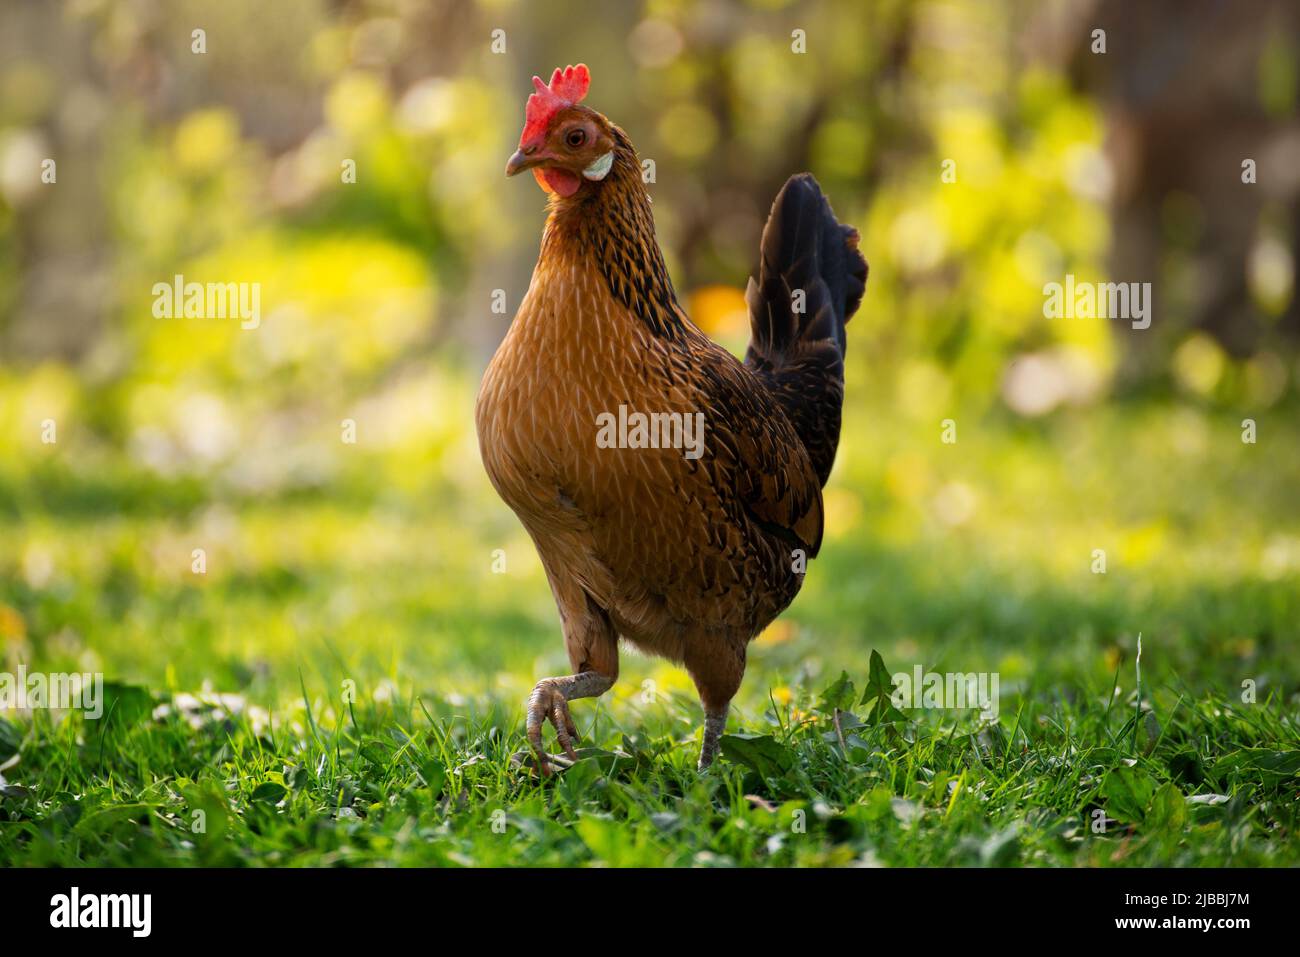 A hen grazing on green backyard grass Stock Photo